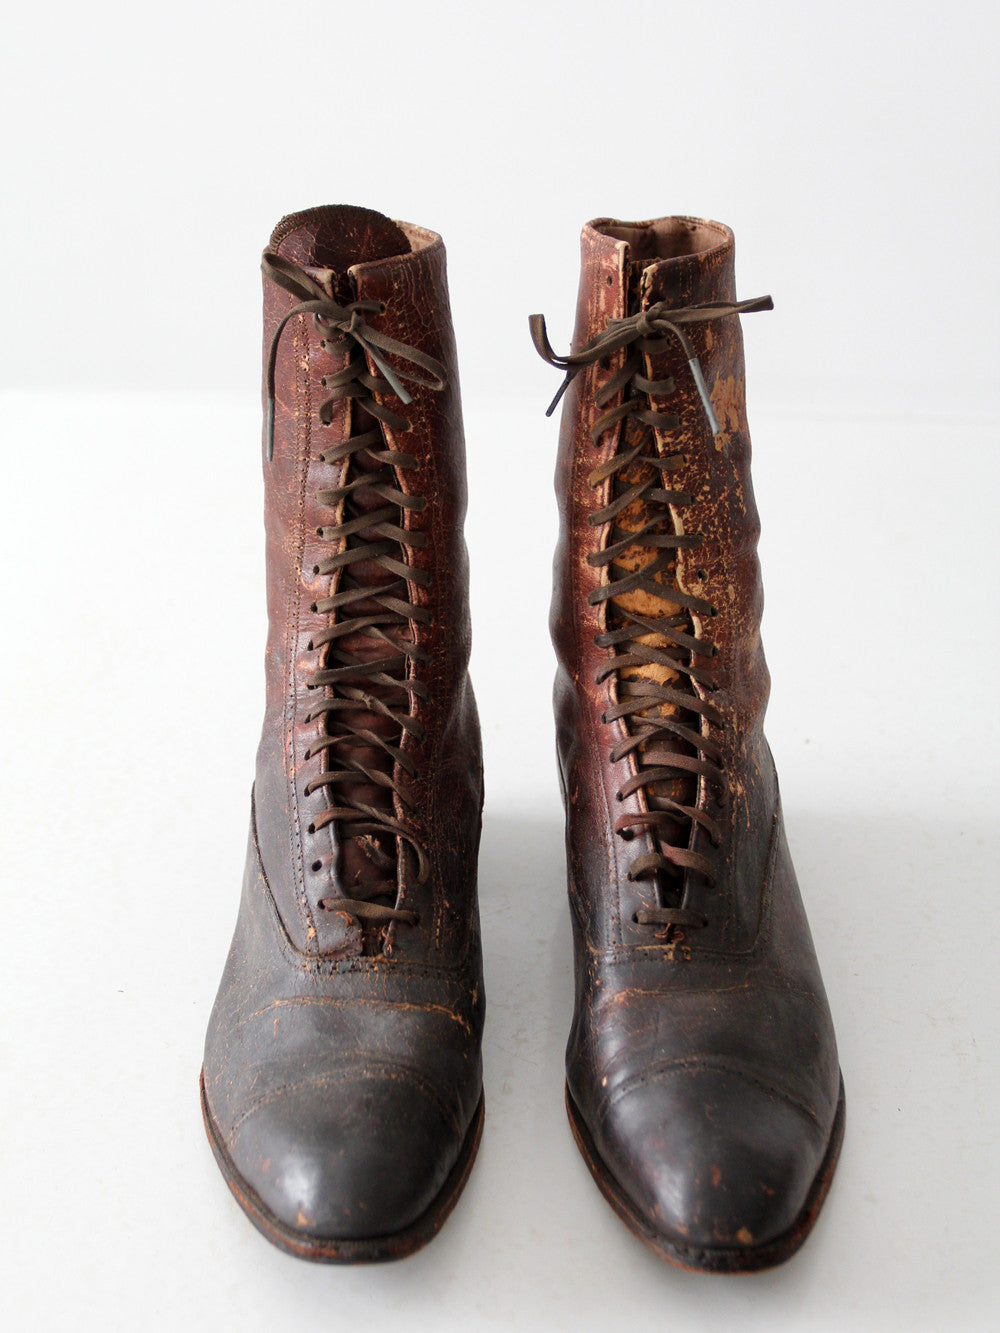 Women's Victorian Boots : r/VintageFashion